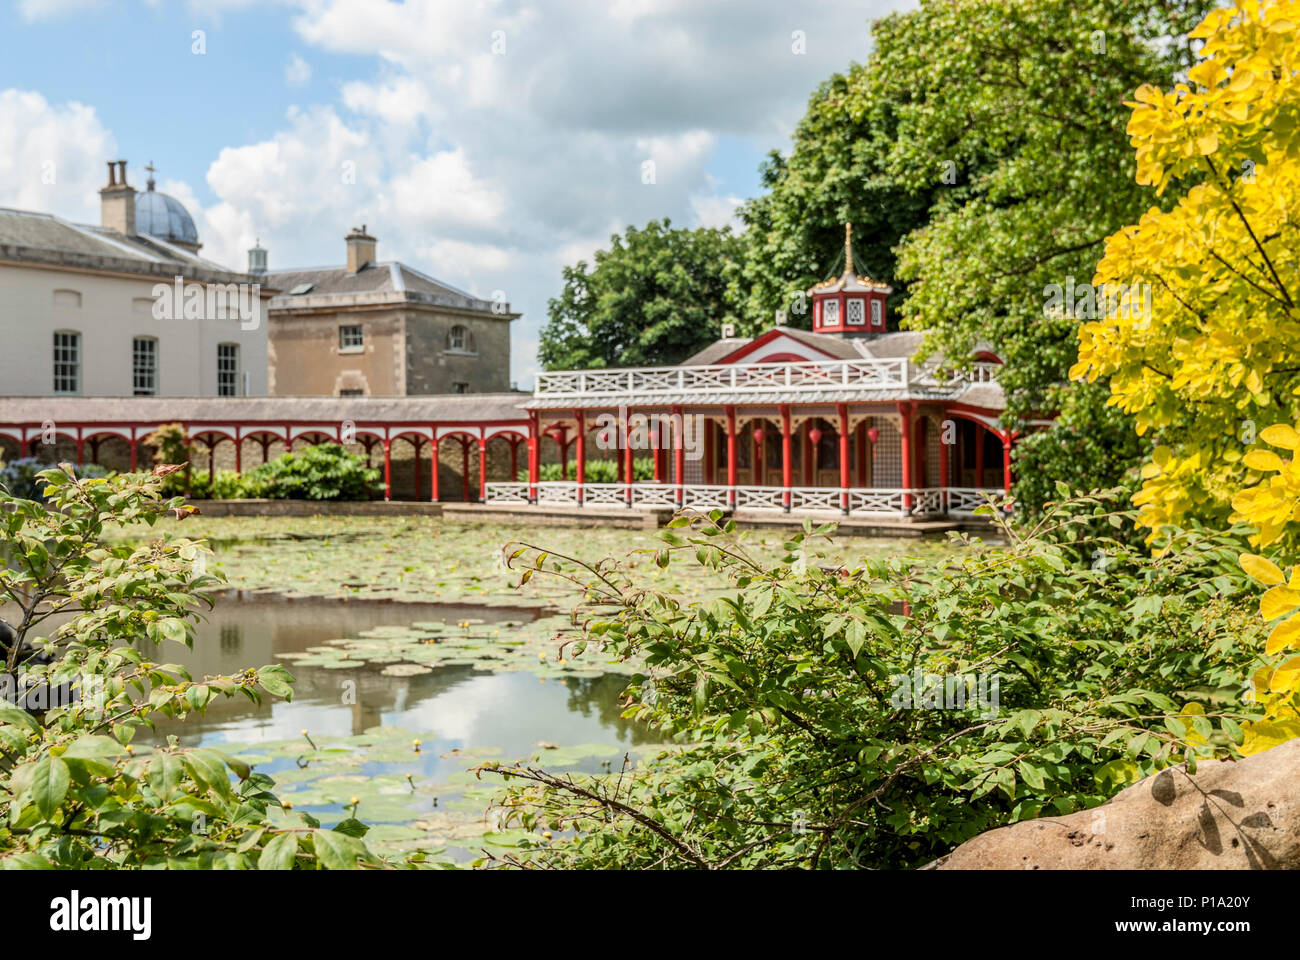 Chinese Pond et maison à Woburn Abbey and Gardens, près de Woburn, Bedfordshire, Angleterre Banque D'Images